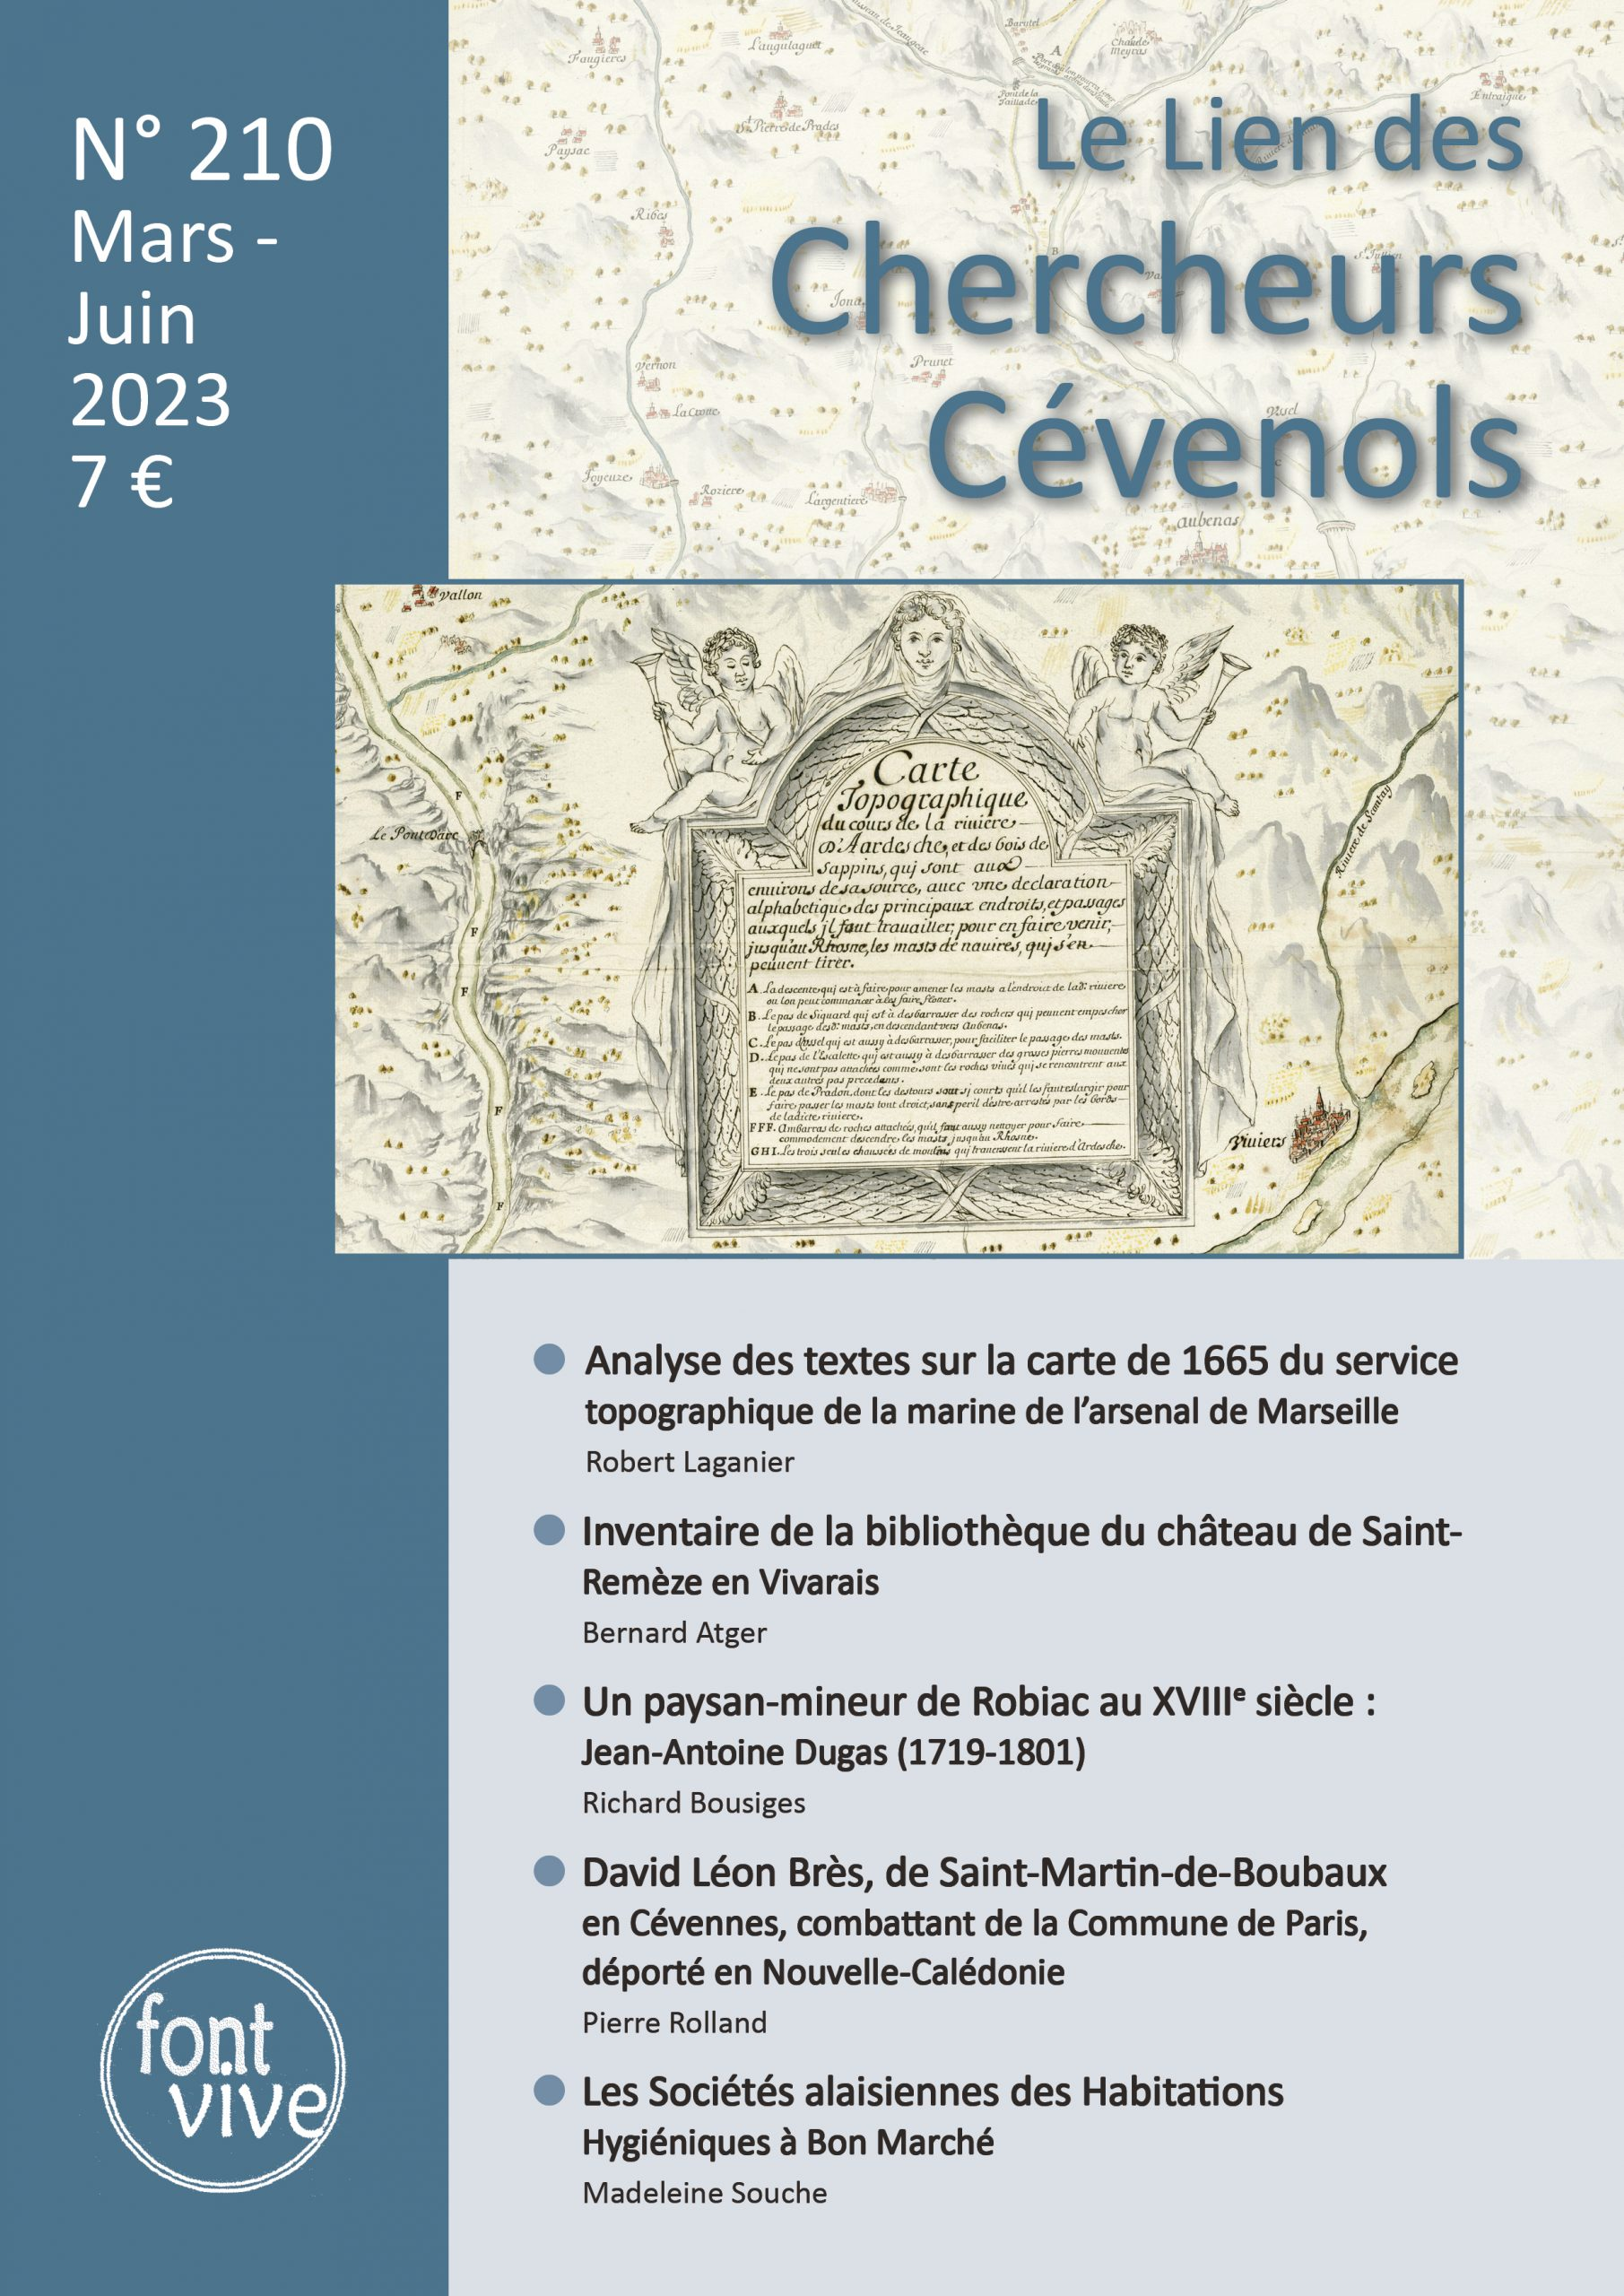 Le Lien des Chercheurs Cévenols, 210 - Mars - Juin 2023 - Bulletin n° 210